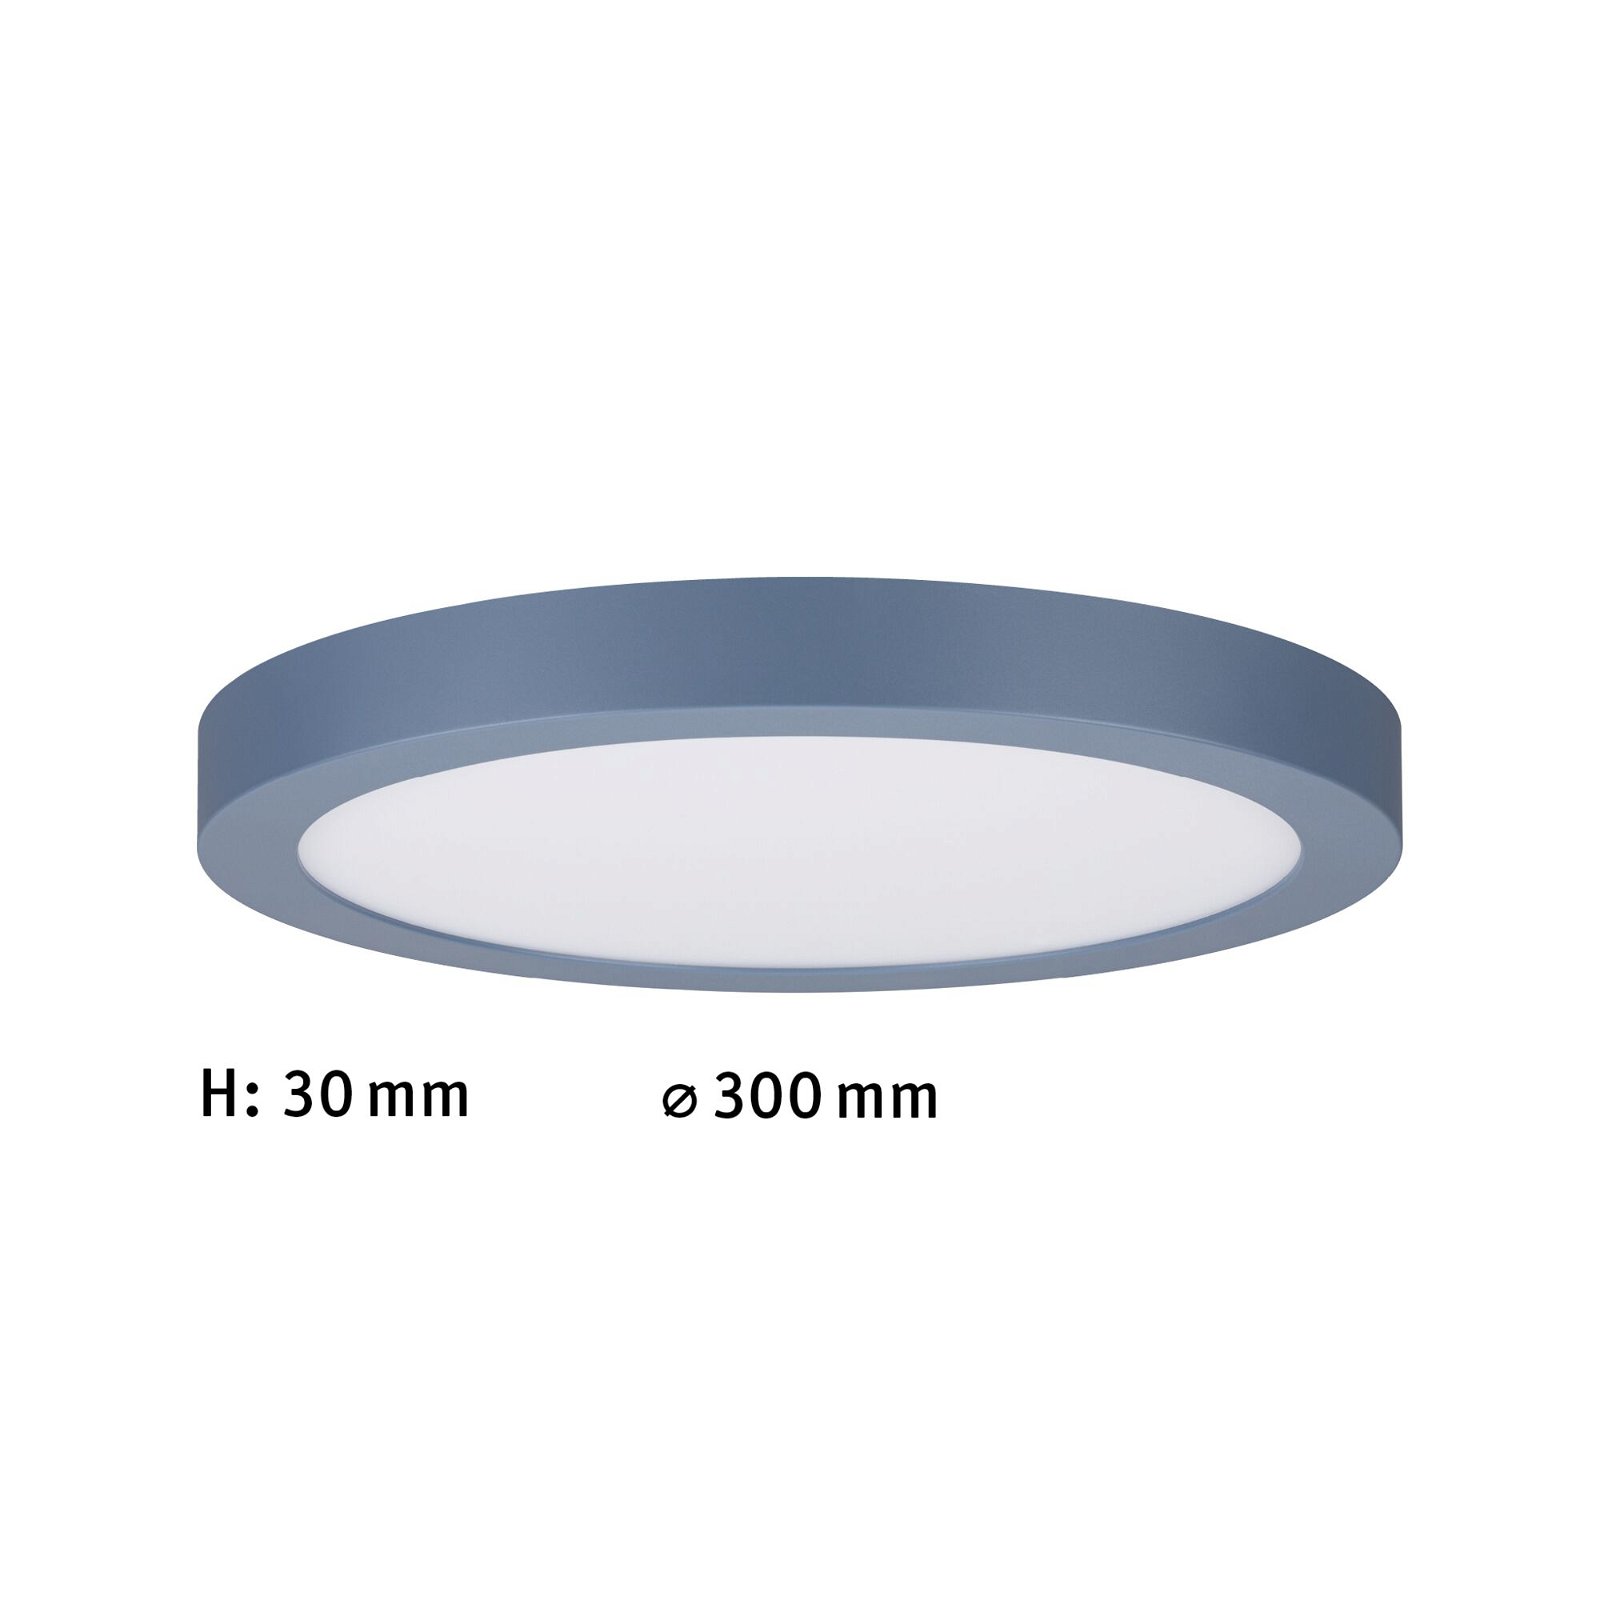 LED Panel Abia round 300mm 22W 2200lm 2700K Graublau